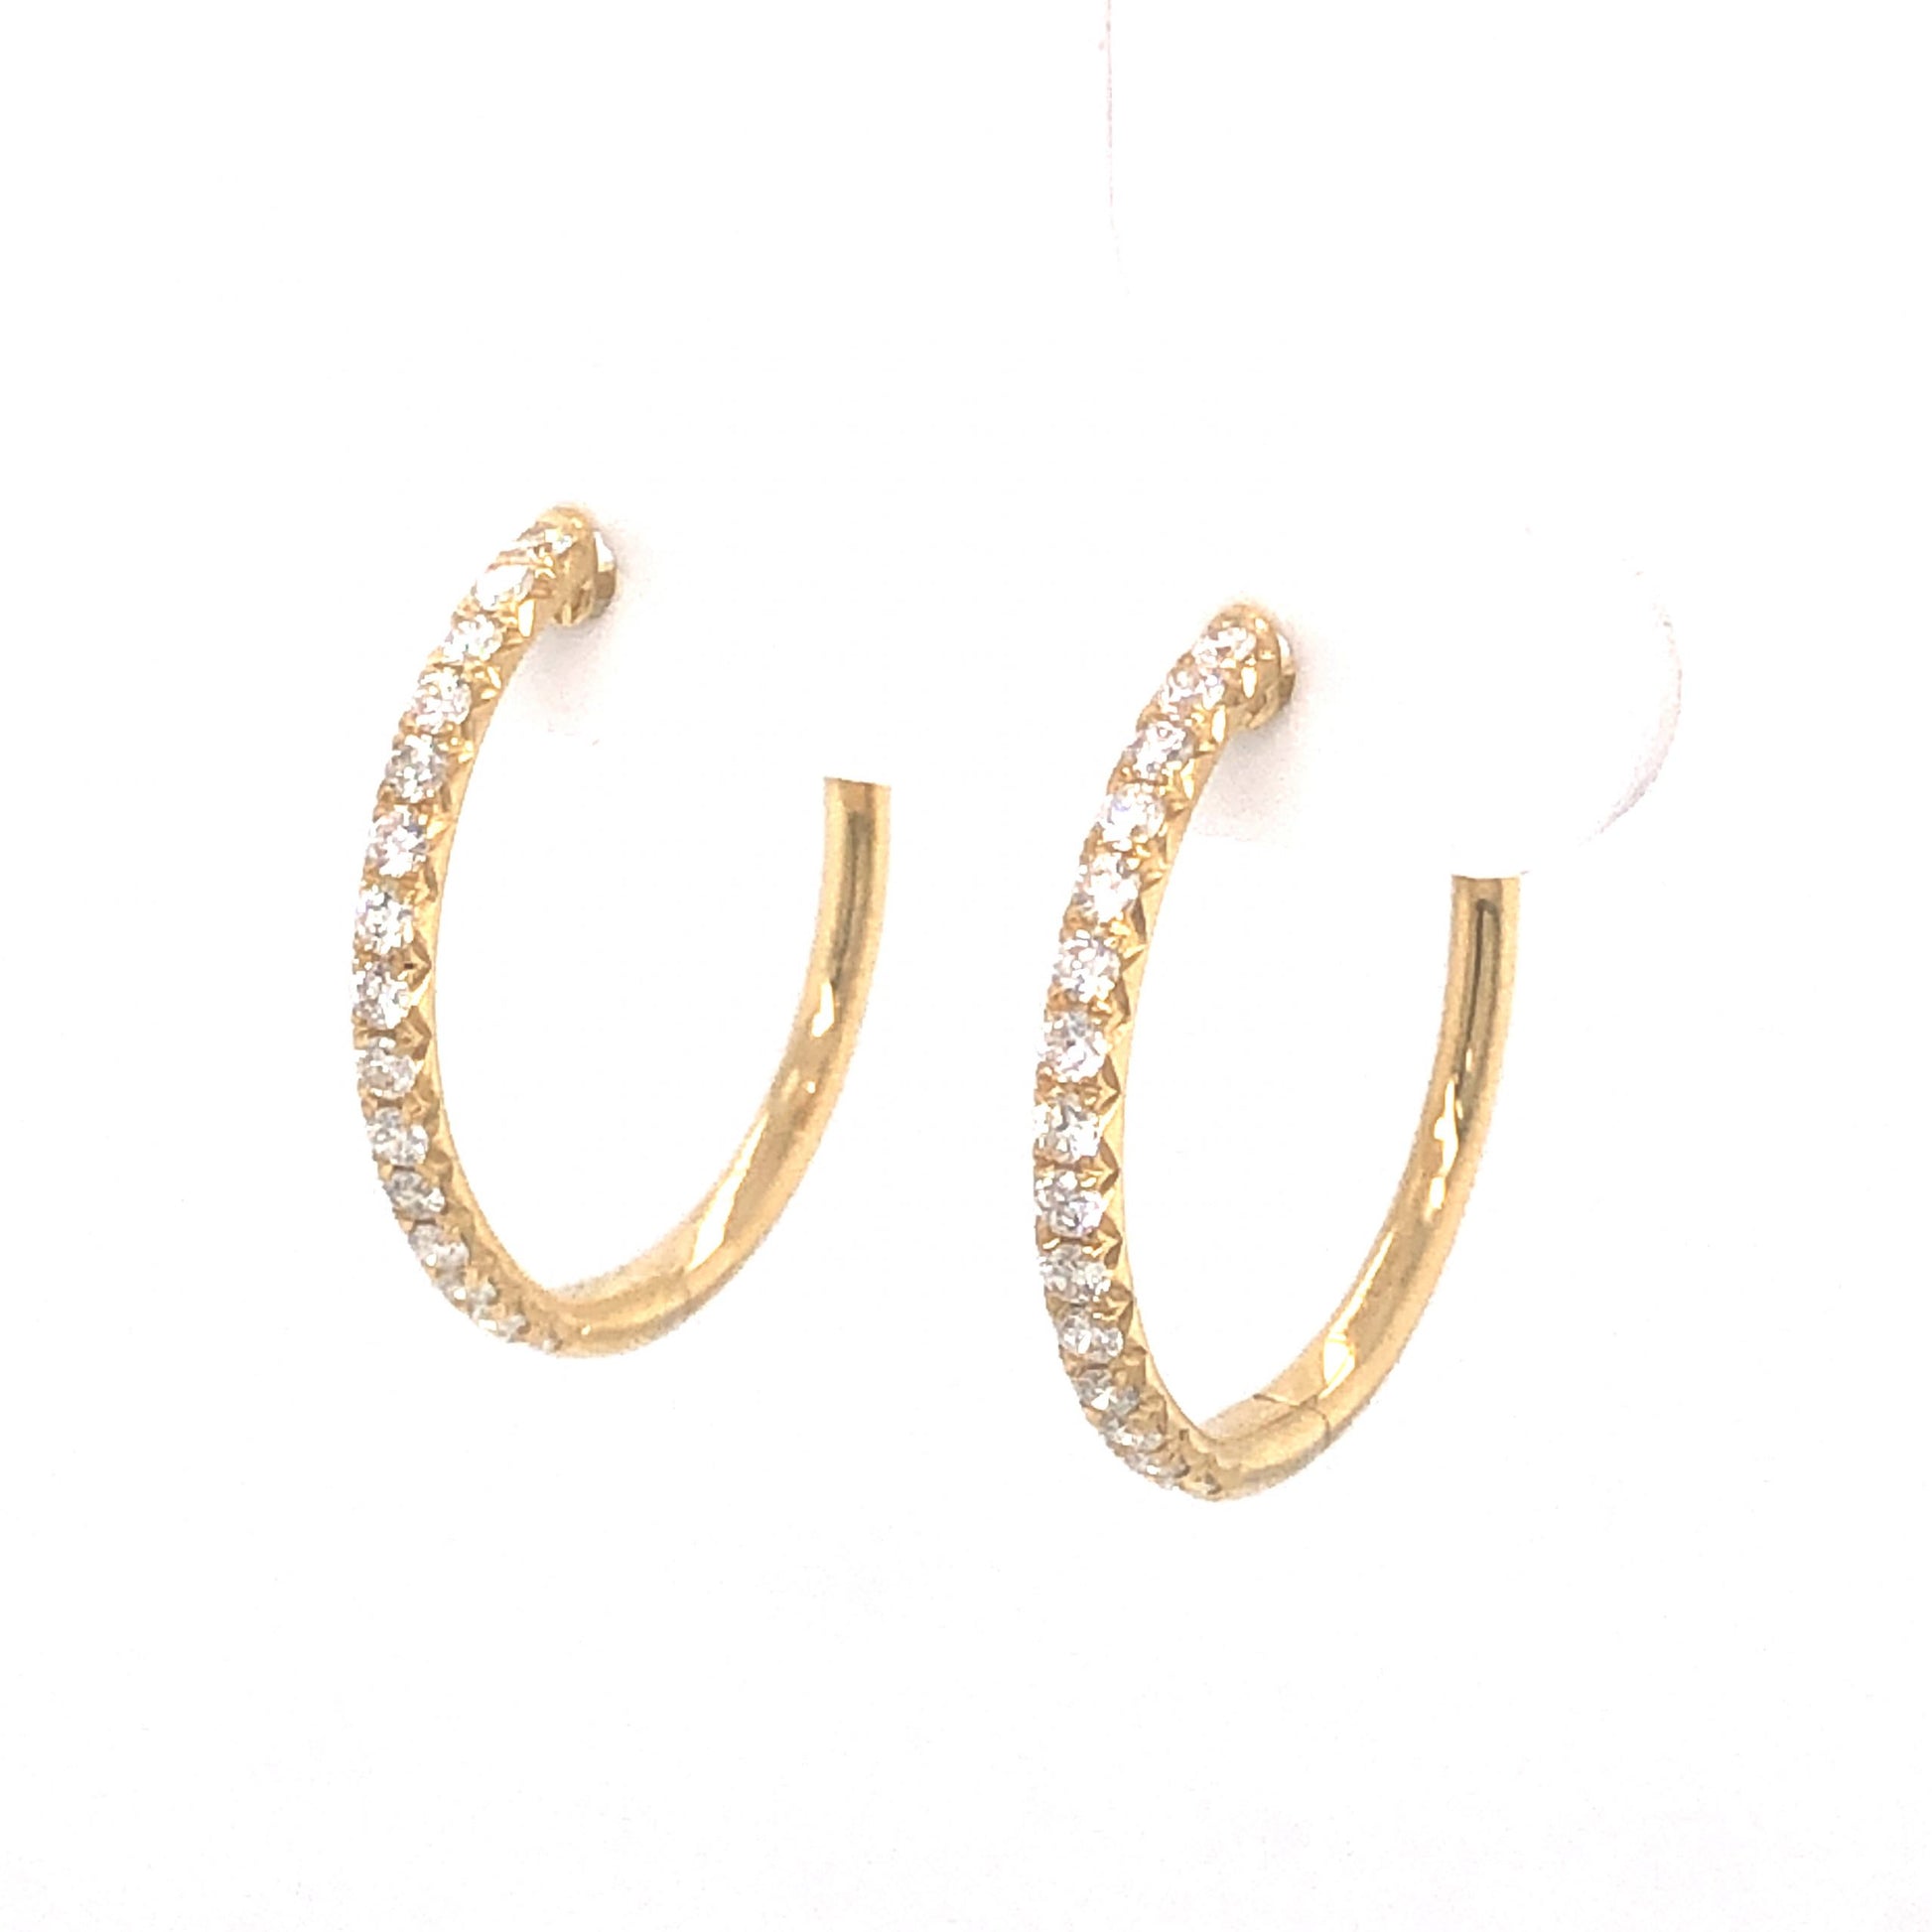 .41 Diamond Earring Hoops in 14K Yellow Gold